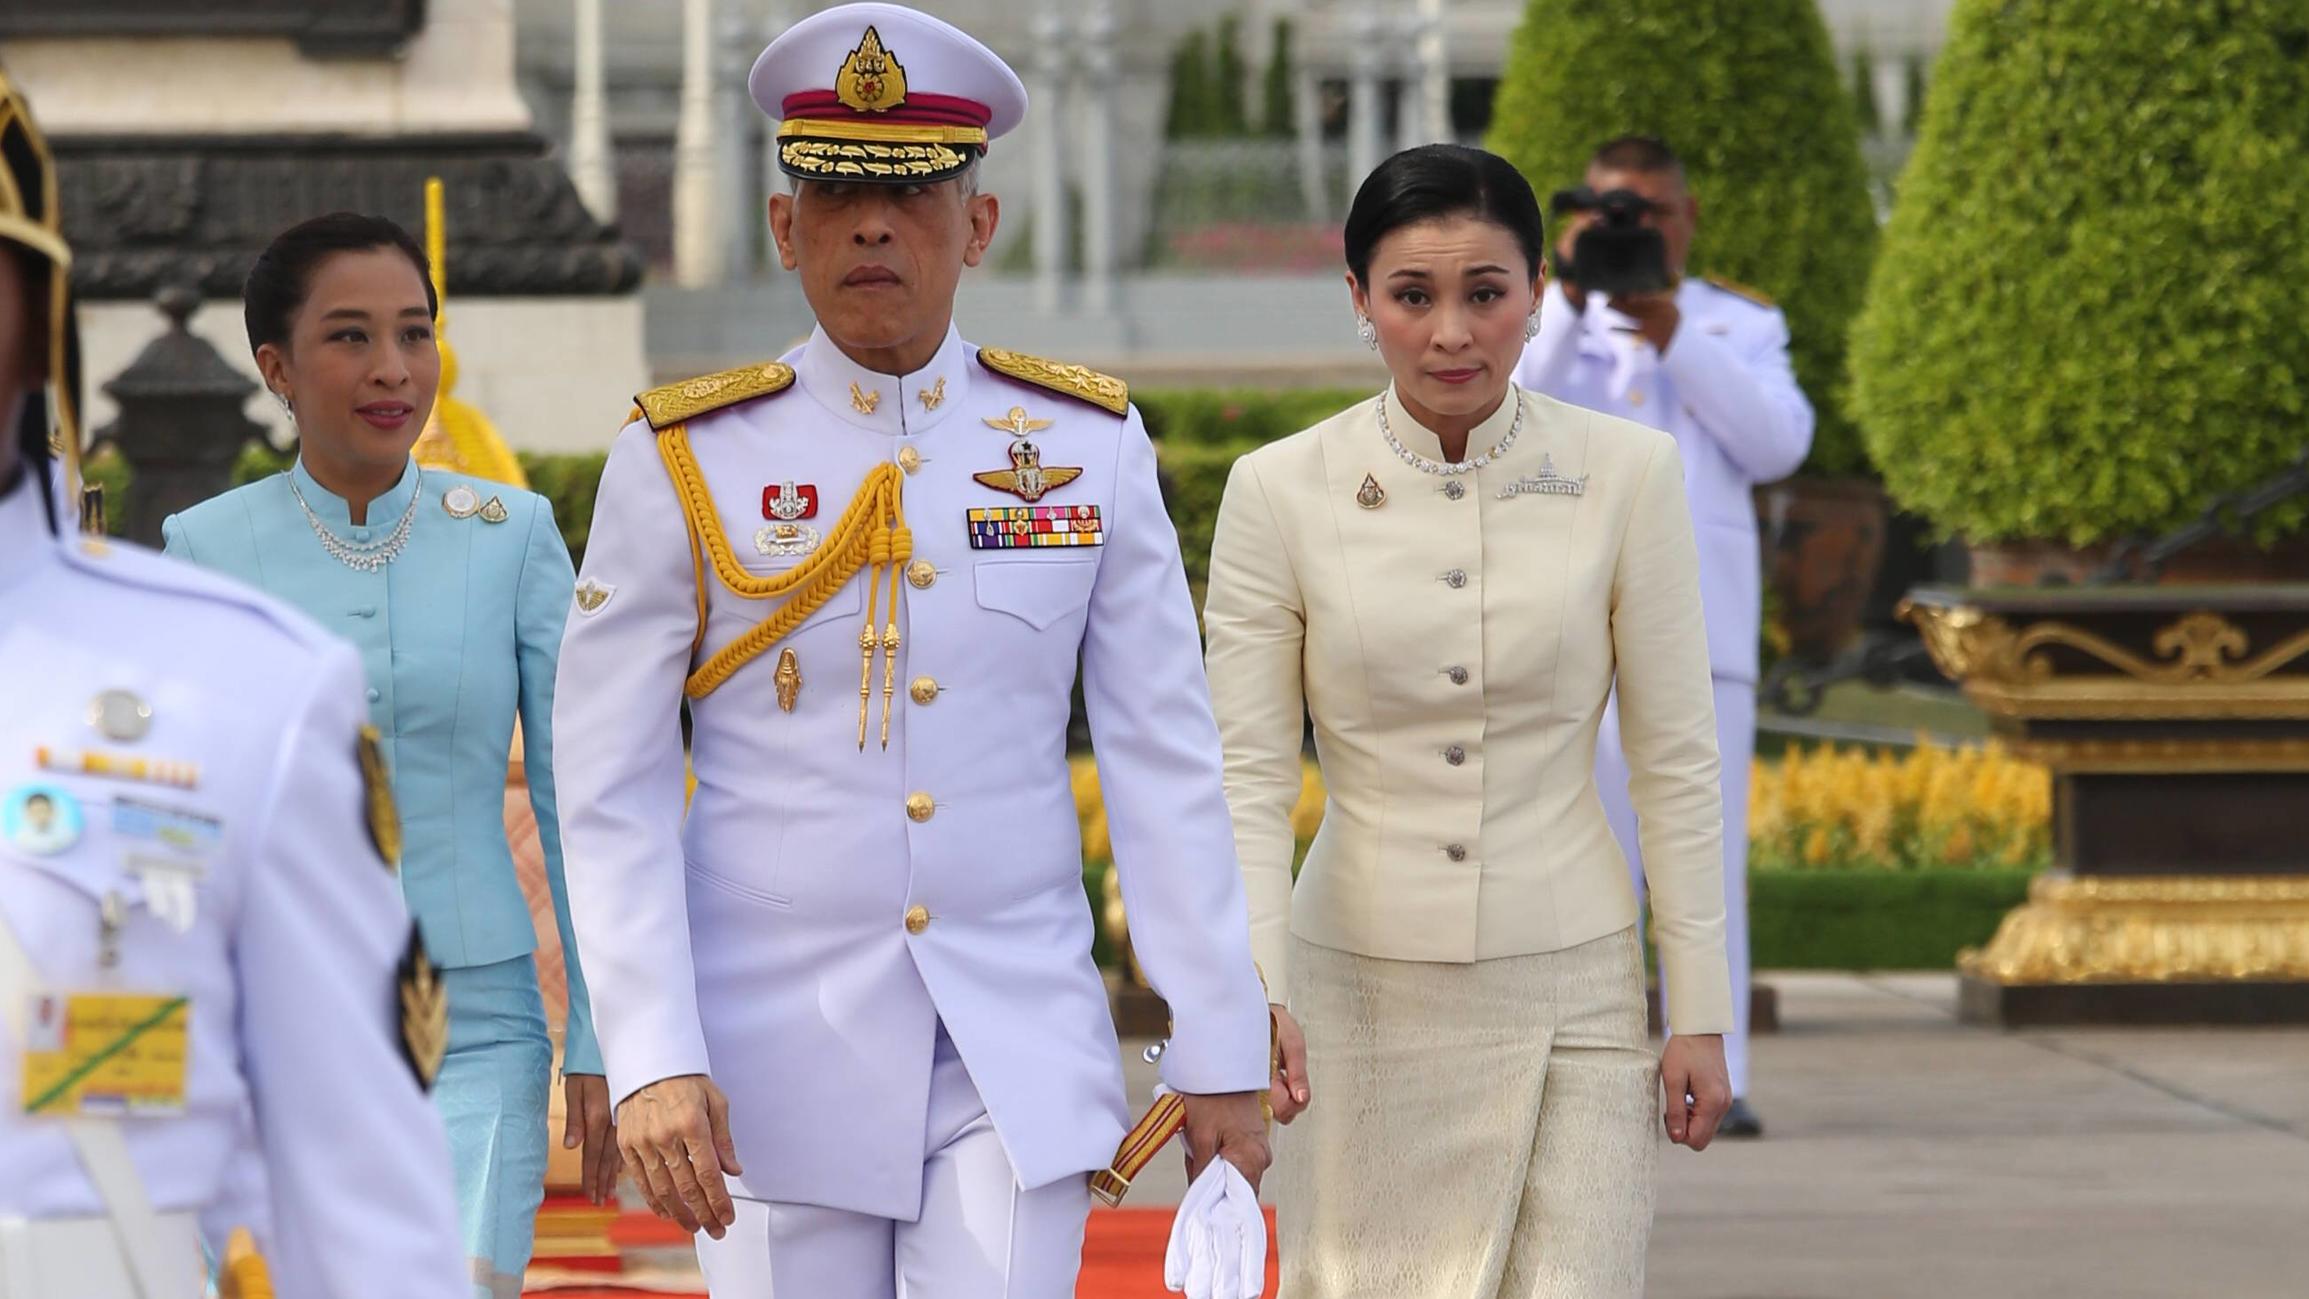 May 2, 2019 - Bangkok, Thailand - Thailand s King Maha Vajiralongkorn (L) and Queen Suthida (R) and his daughter Princess Bajrakitiyabha arrive to pay homage to the statue of former King Chulalongkorn or King Rama V ahead of the royal coronation at t